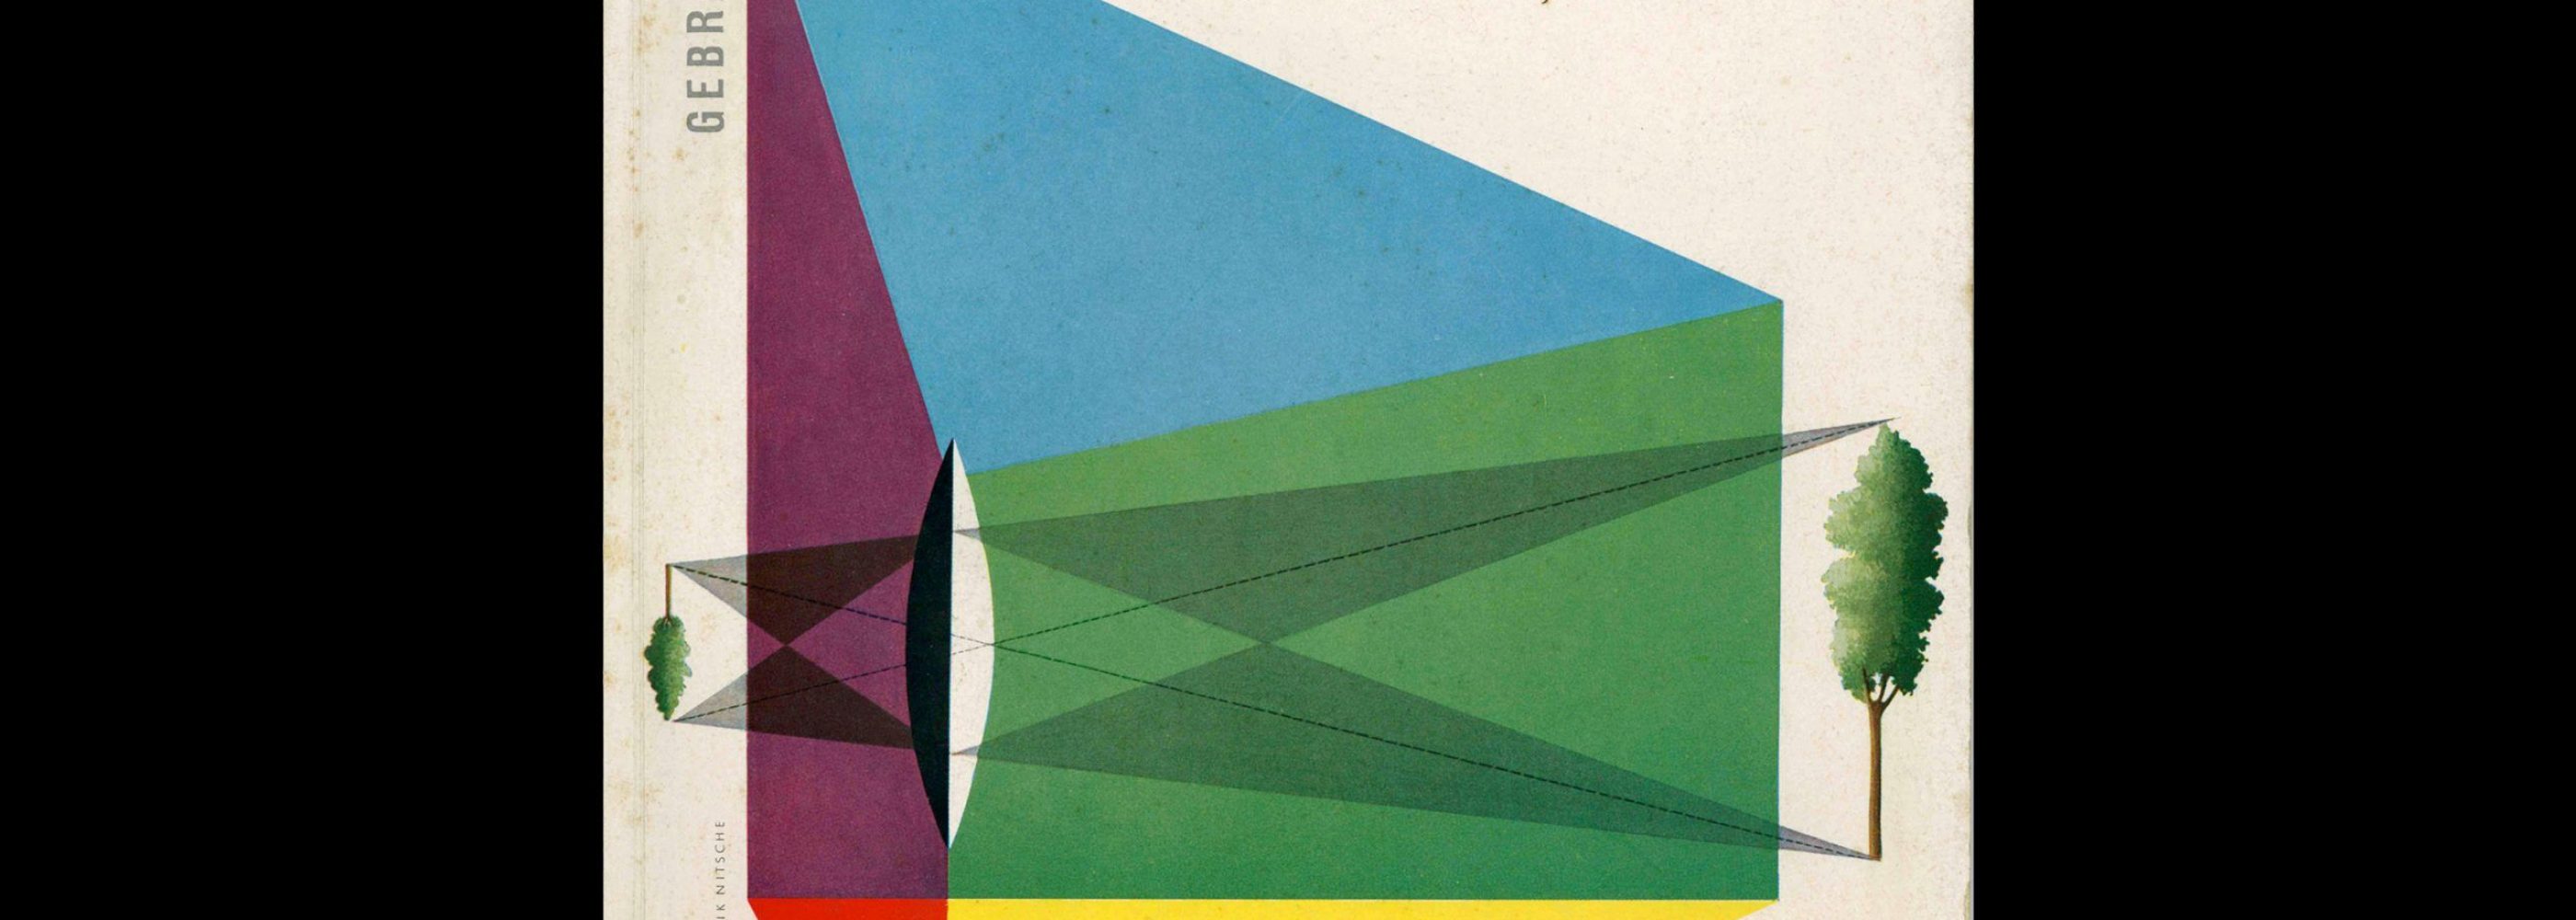 Gebrauchsgraphik, 4, 1956. Cover design by Eric Nitsche